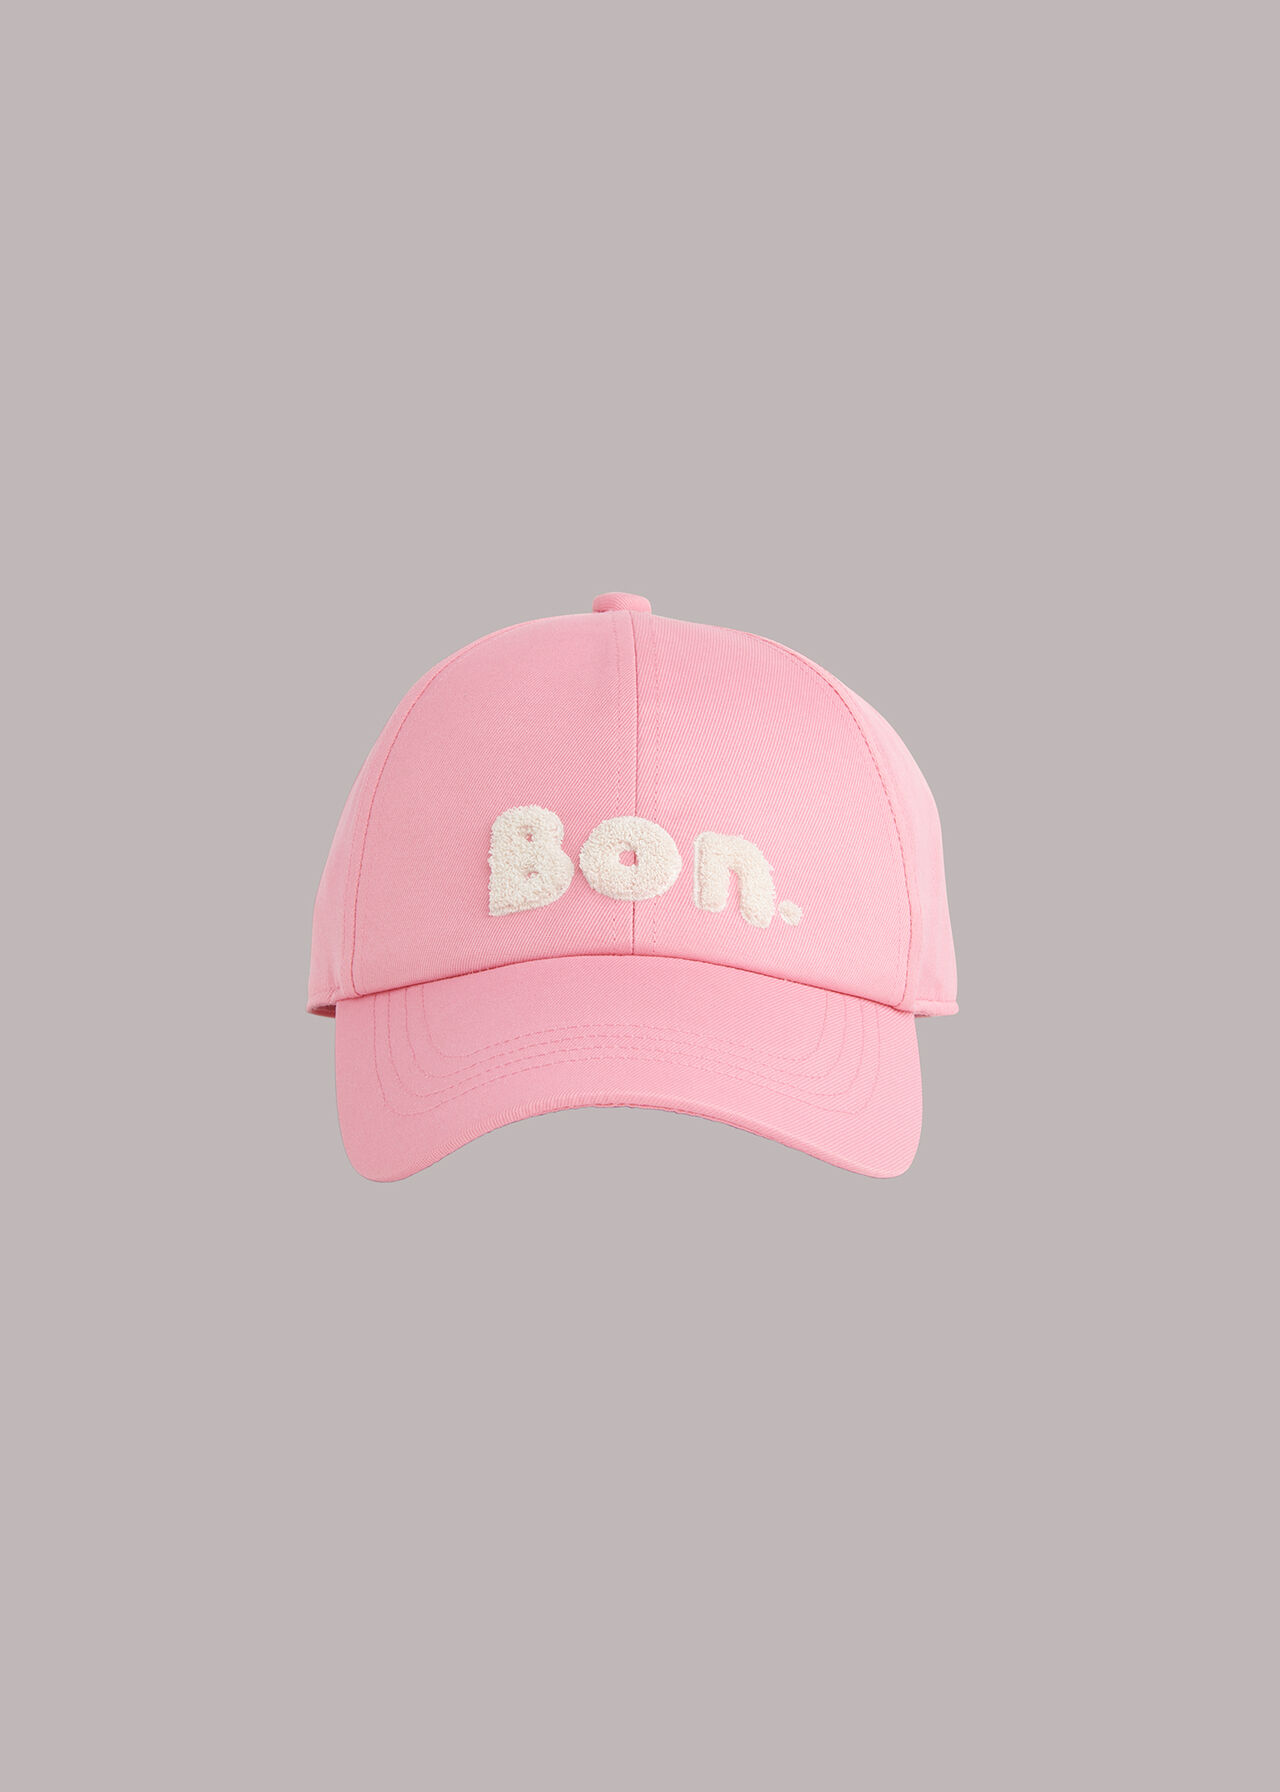 Bon Logo Cap